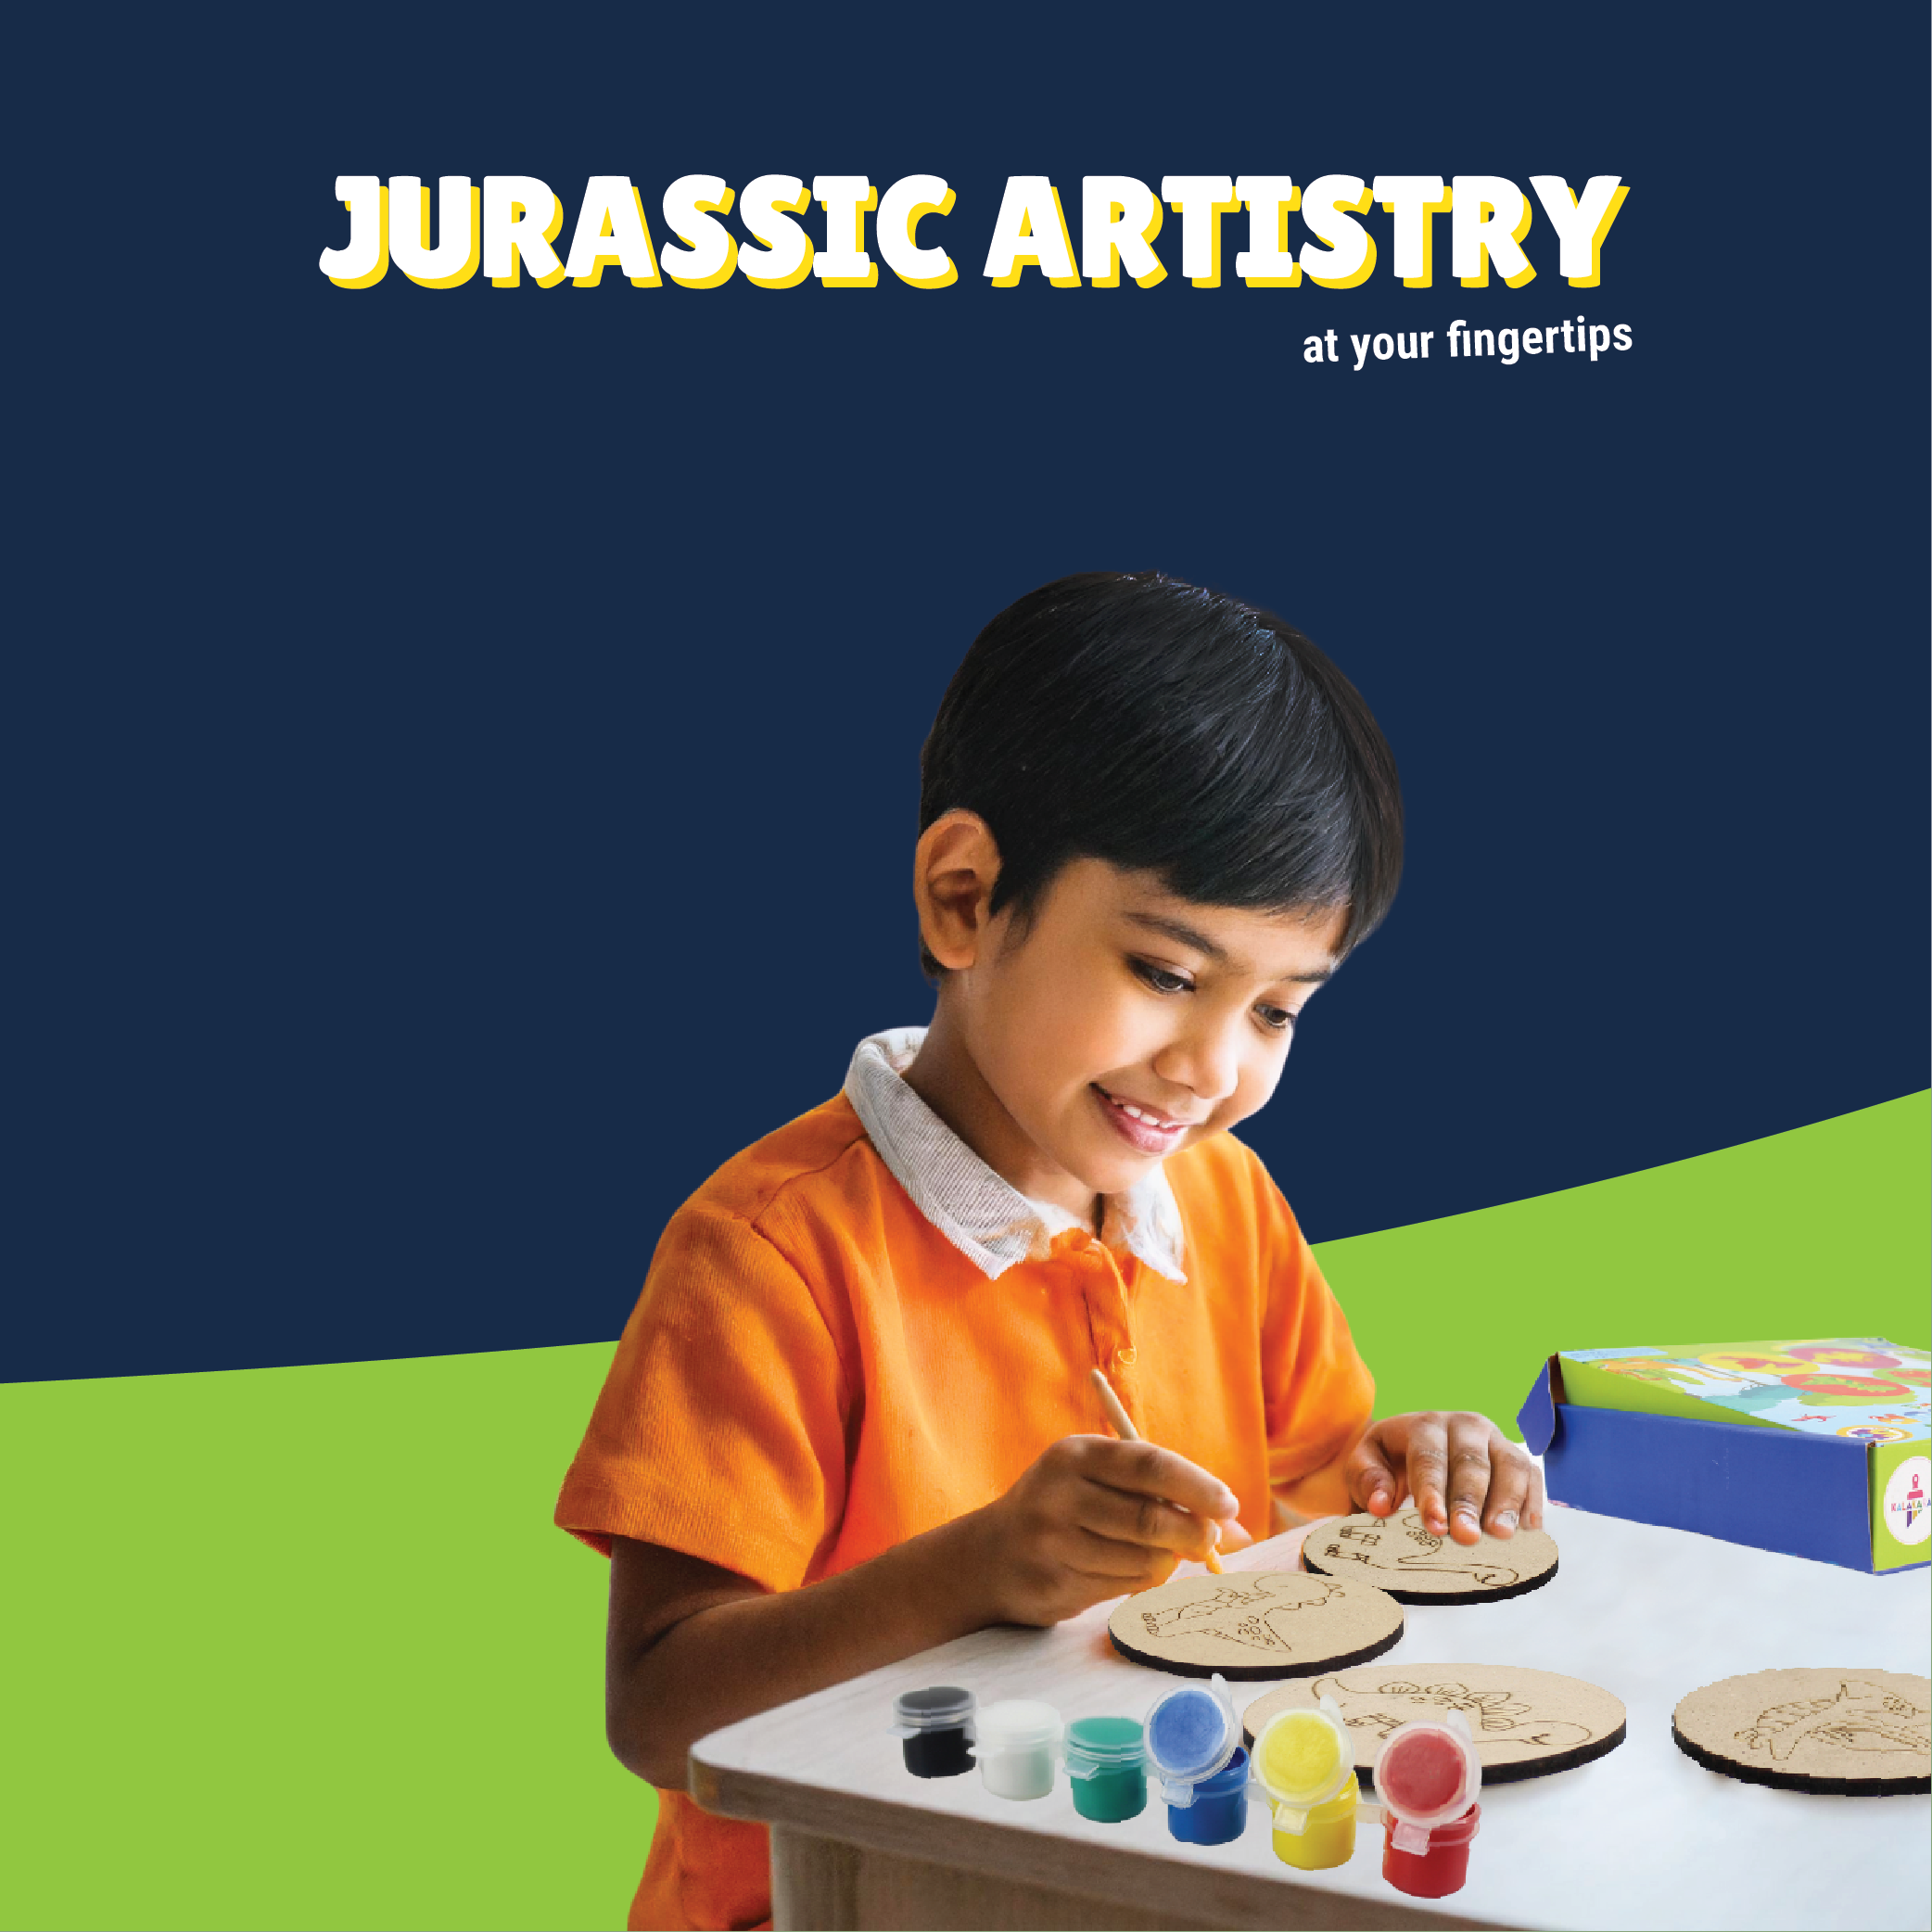 Dinosaur Coasters Painting Kit